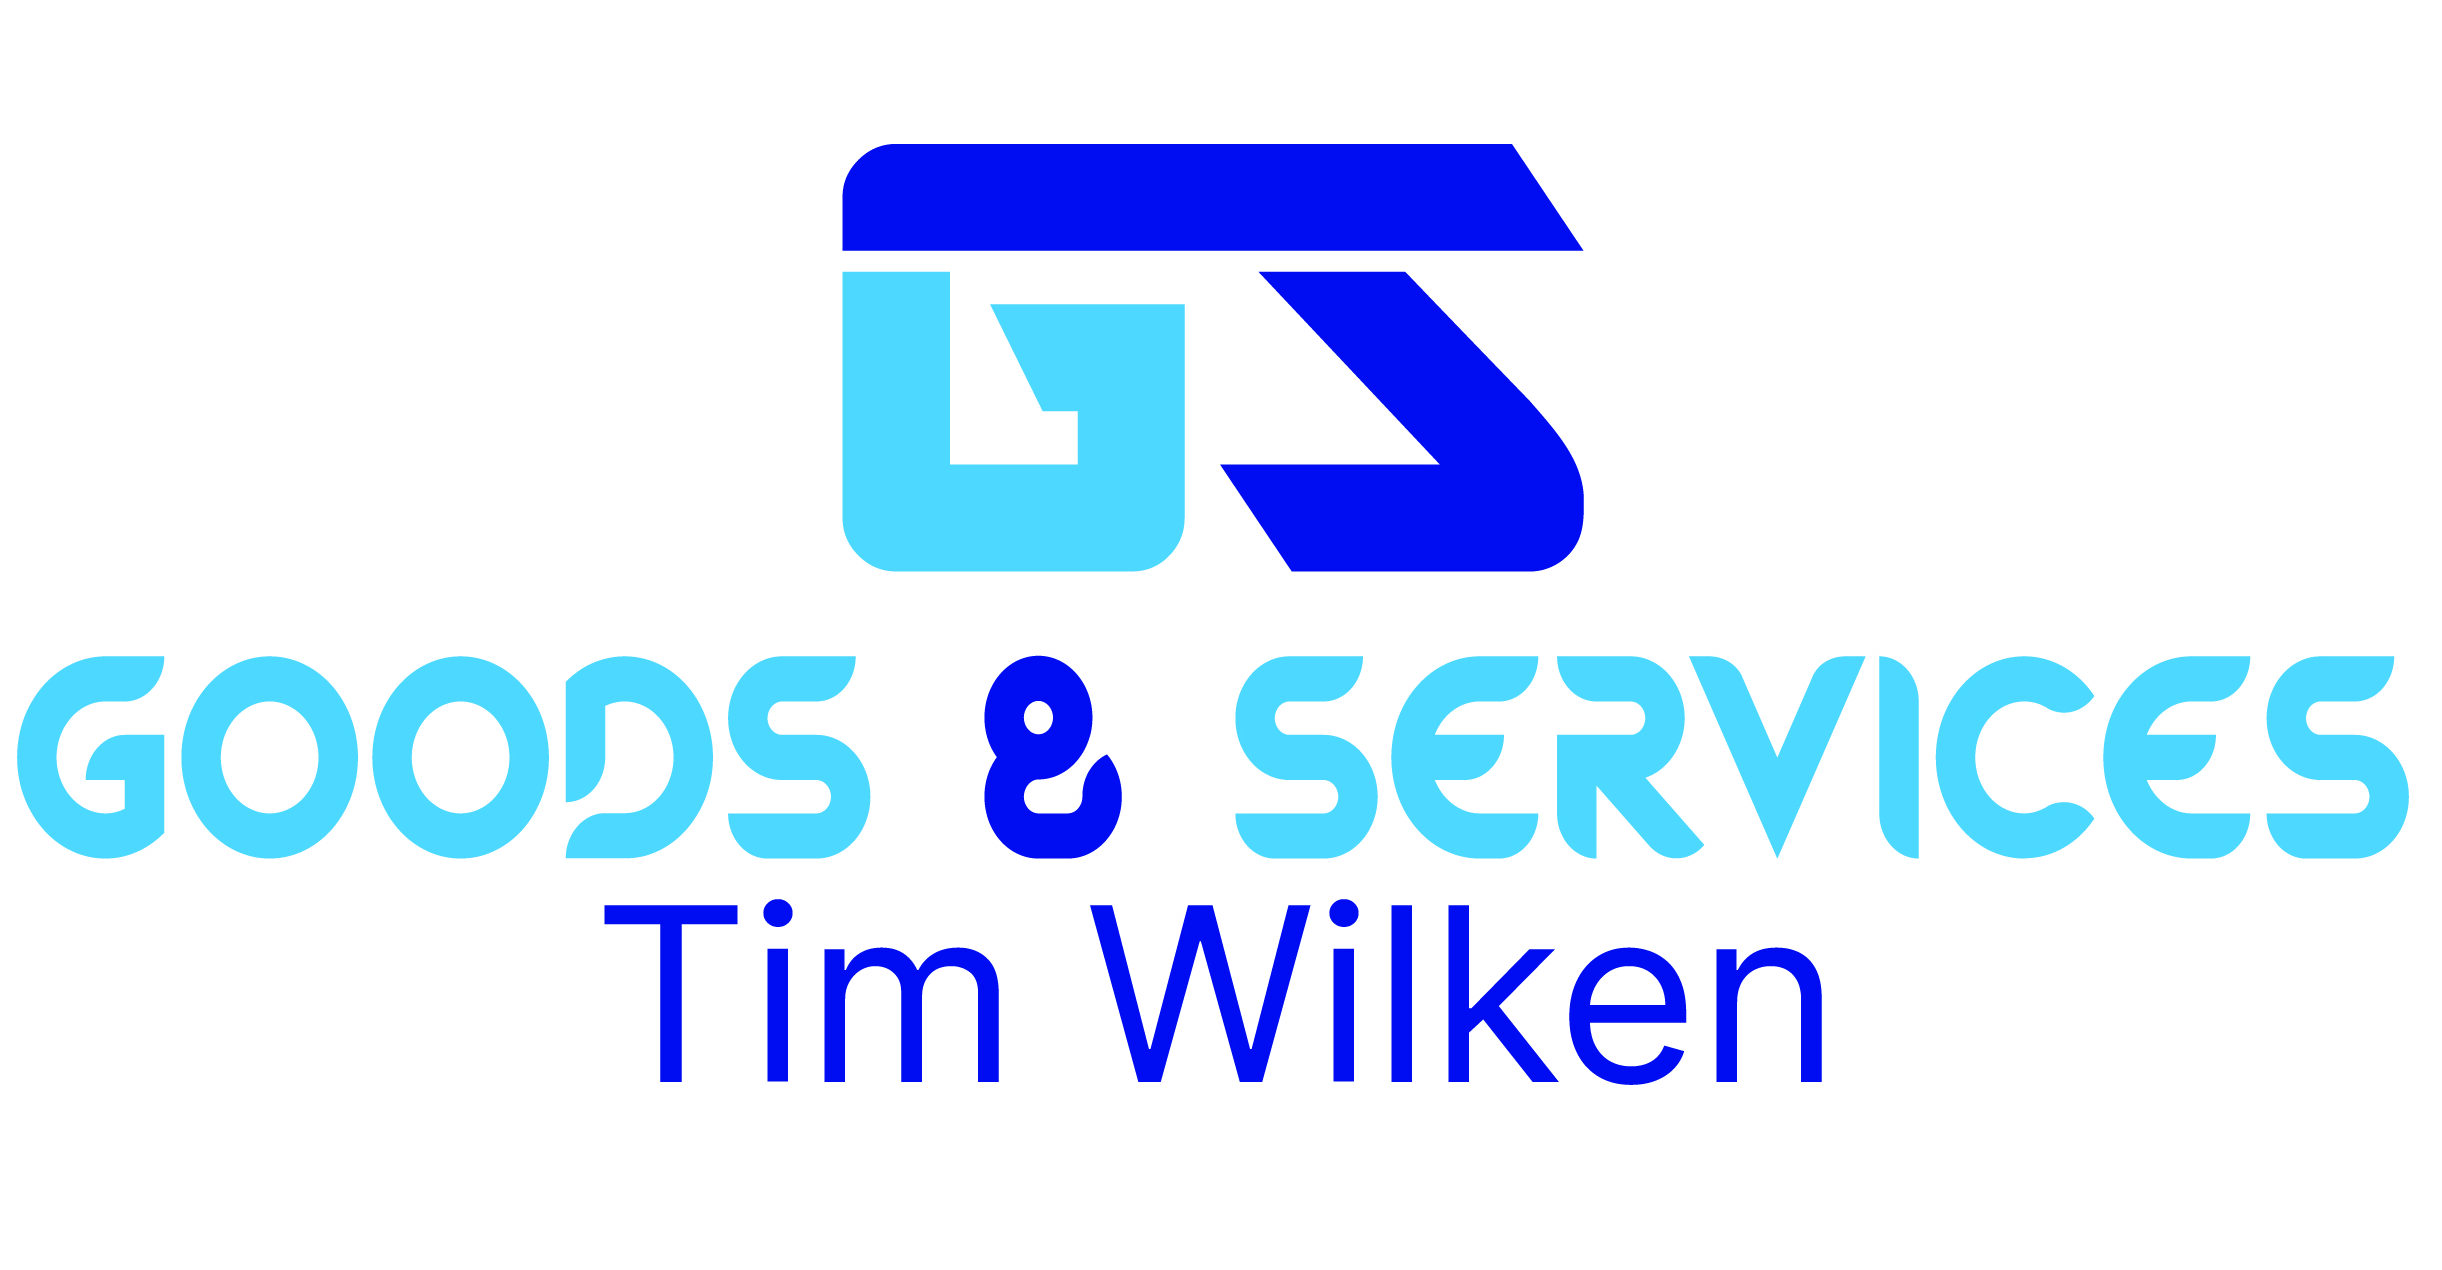 Goods & Services - Tim Wilken